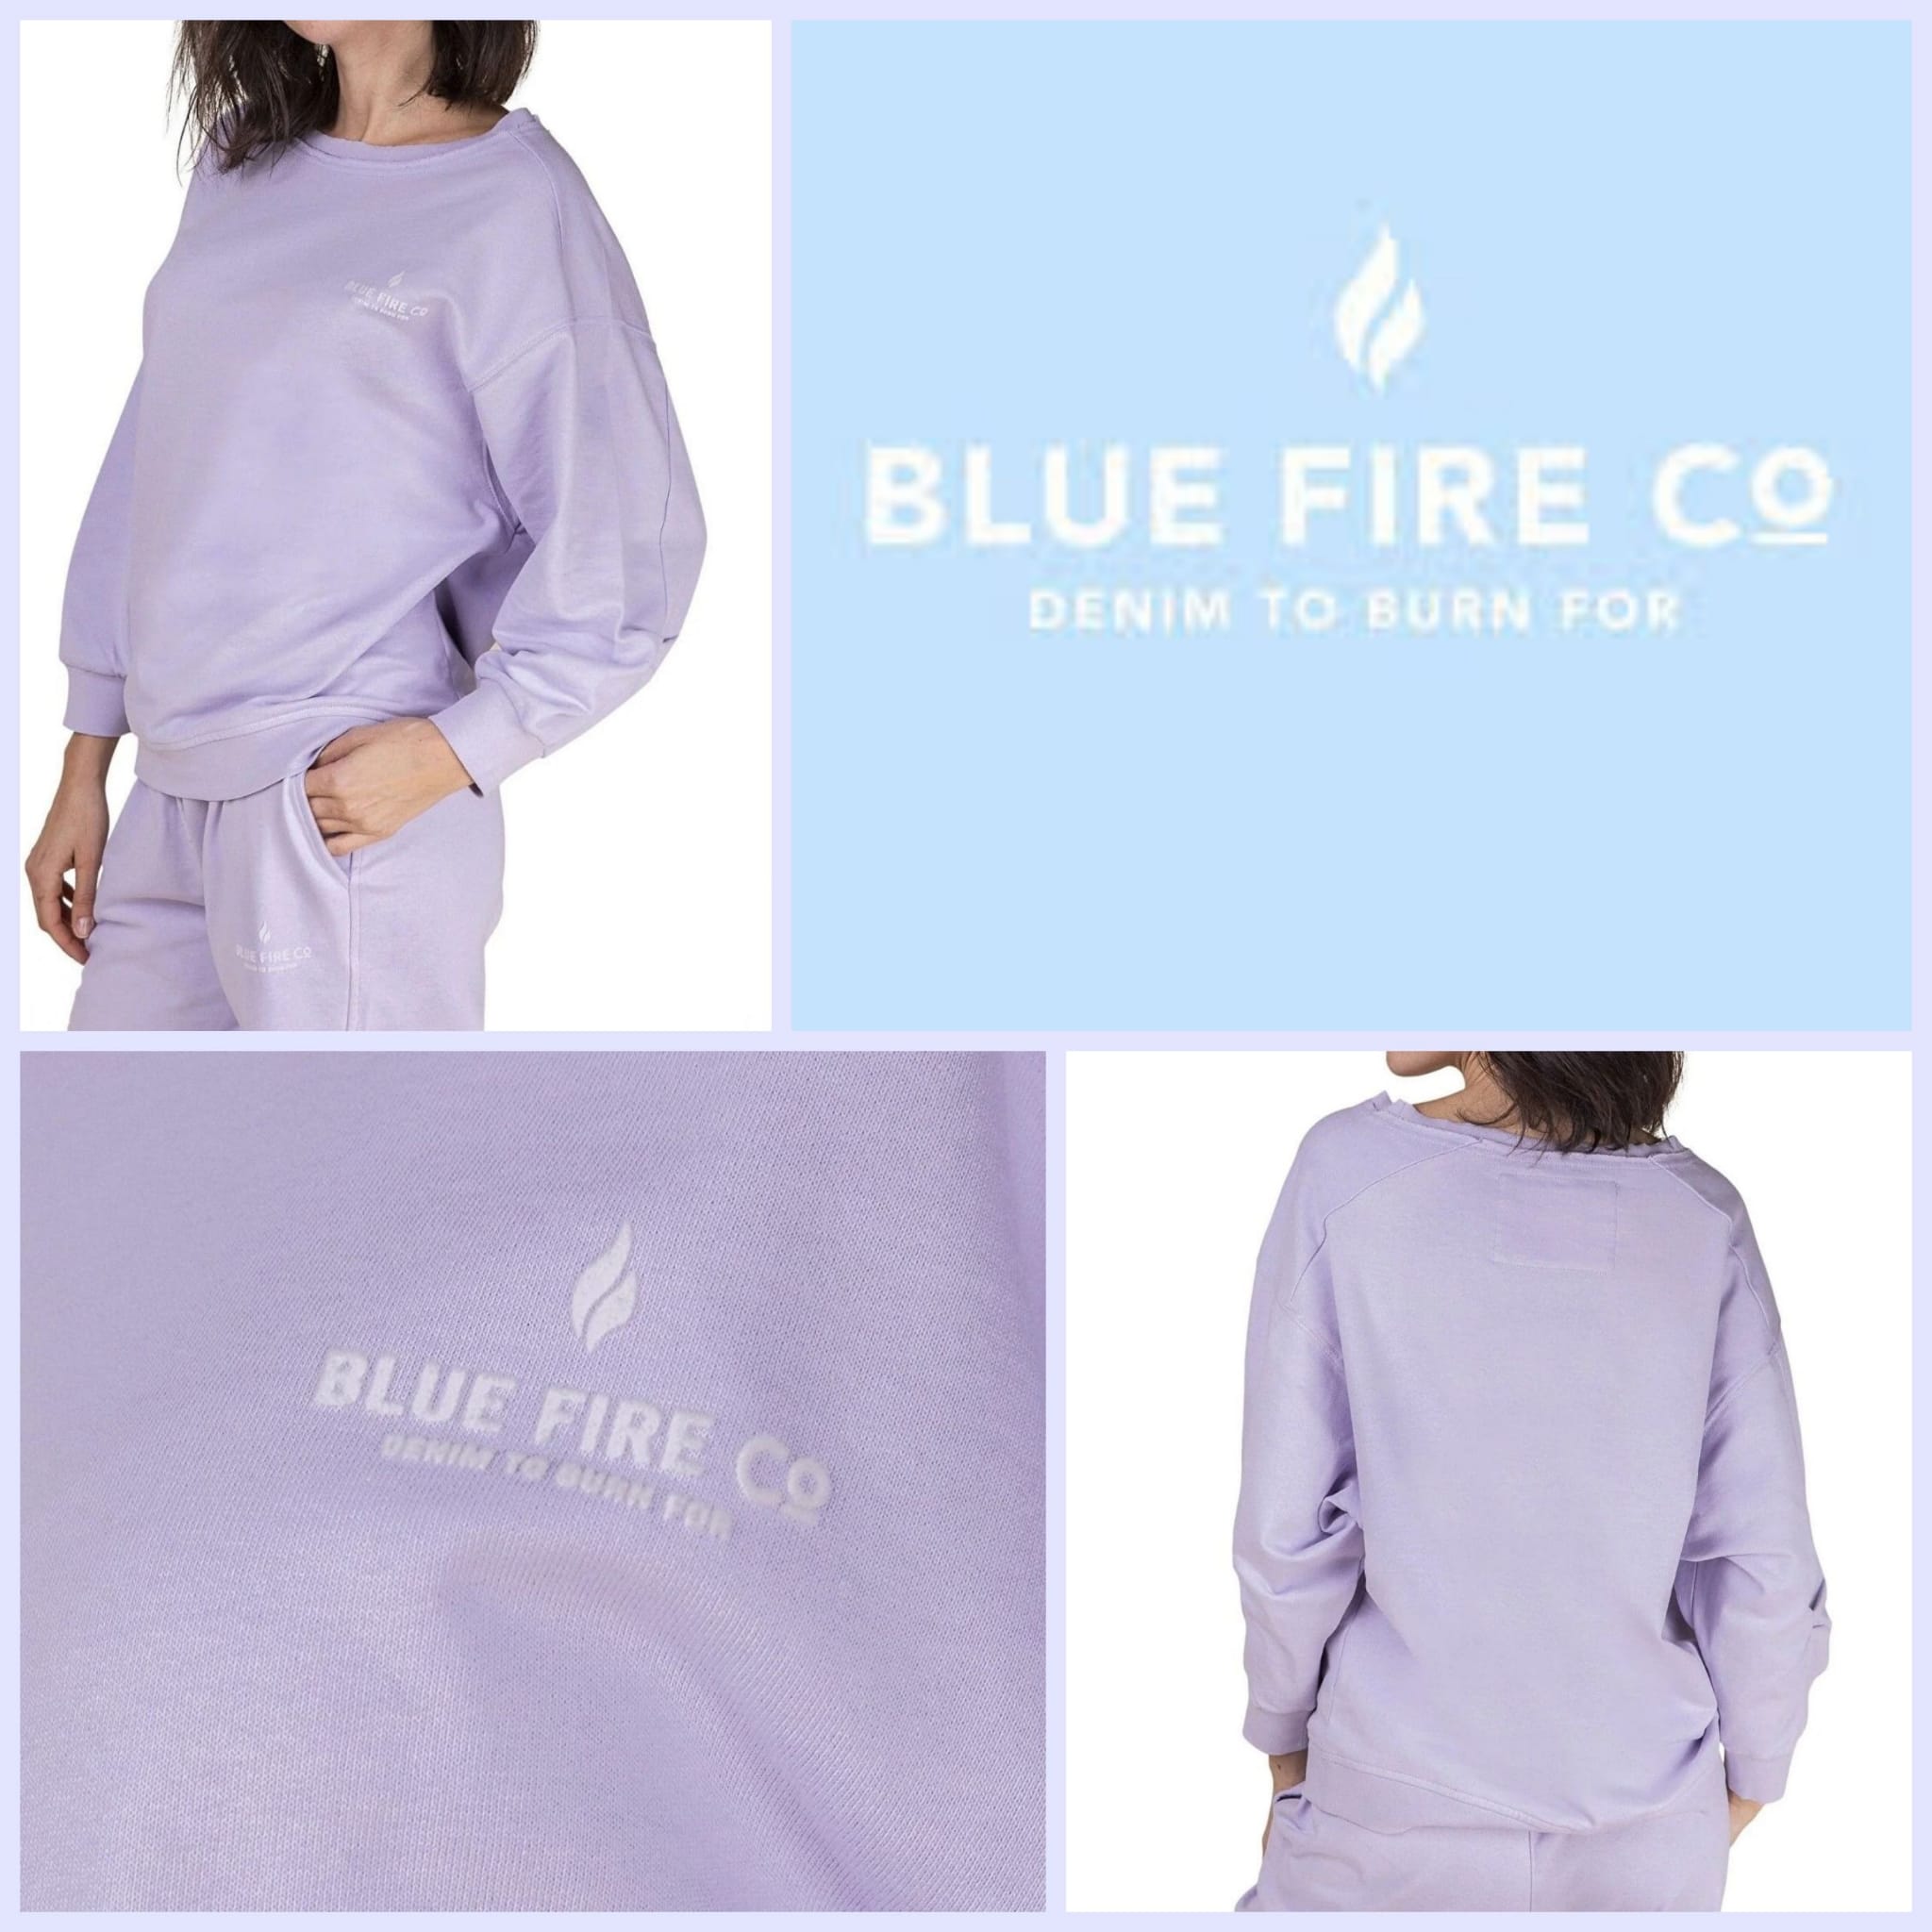 Women's sweatshirts from Blue Fire Co.